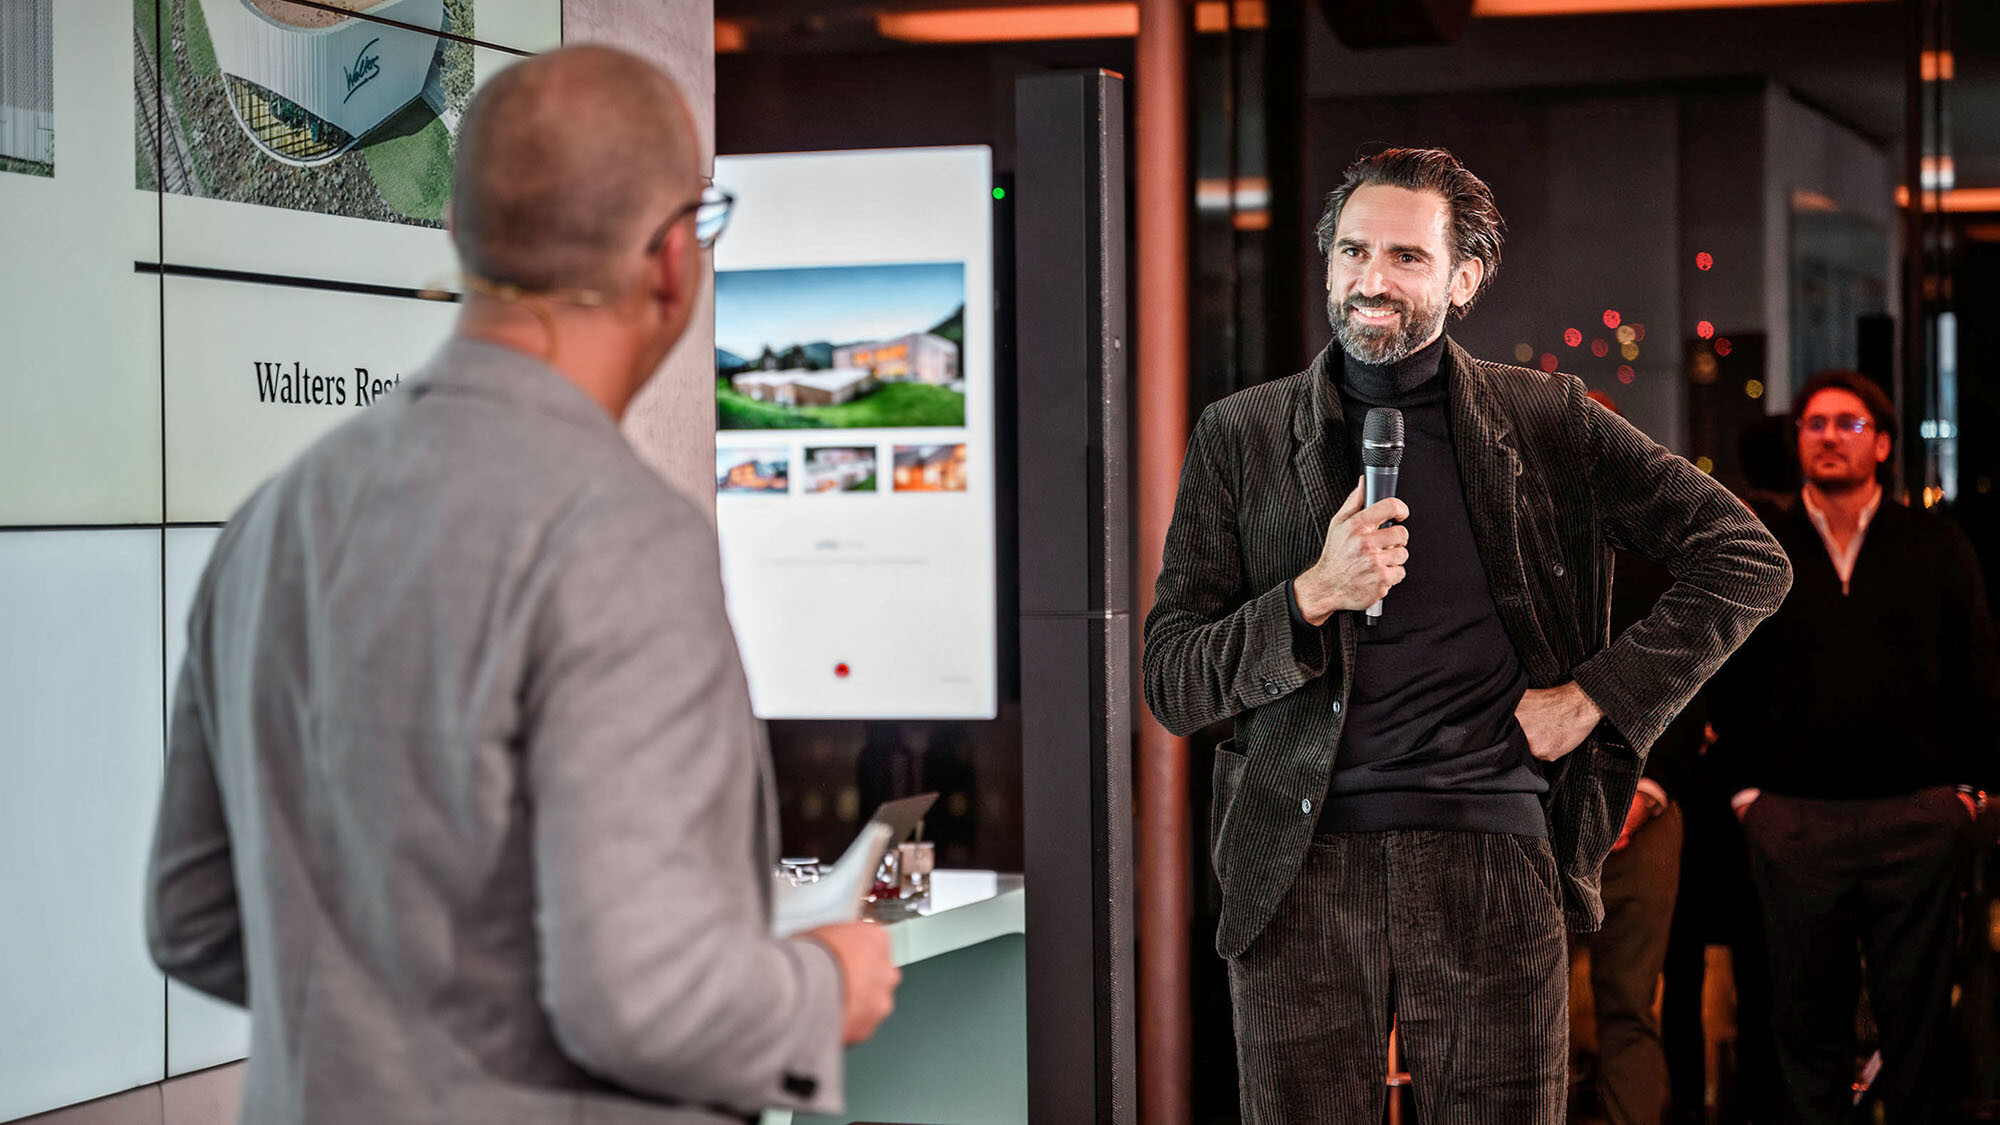 Marketingleiter International Jürgen Jungmair und Architekt Thomas Heil vom österreichischen Büro dreiplus Architekten im Gespräch vor der Präsentationsfläche.